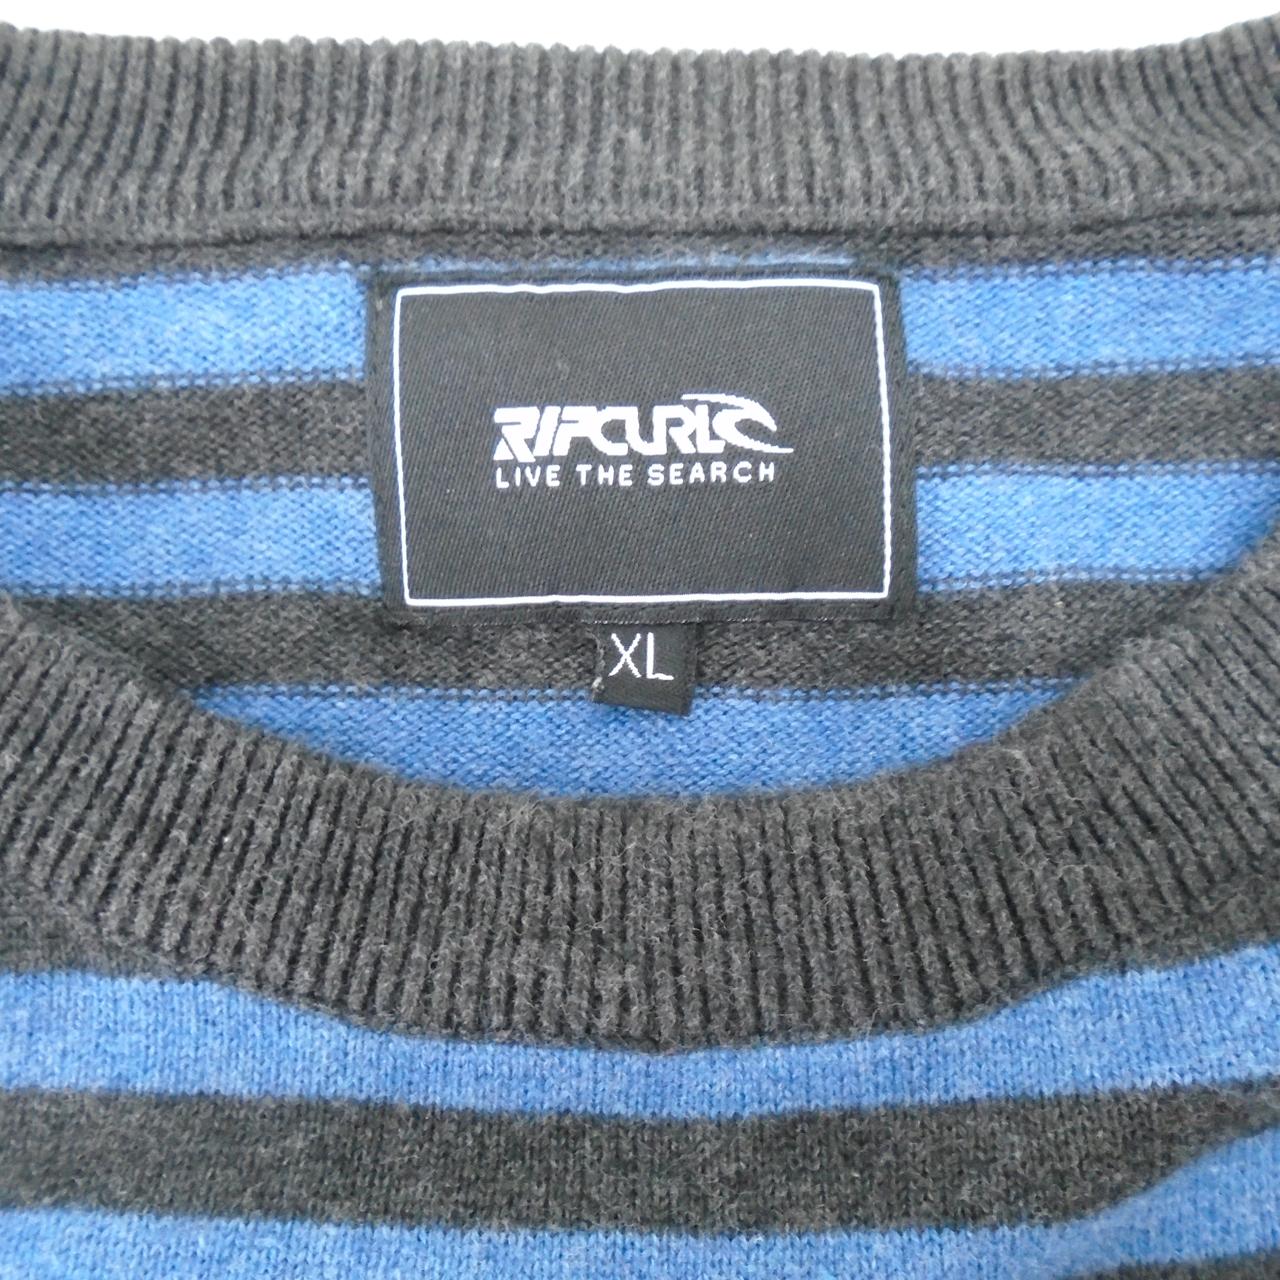 Men's Sweater ripcurl. Multicolor. XL. Used. Good